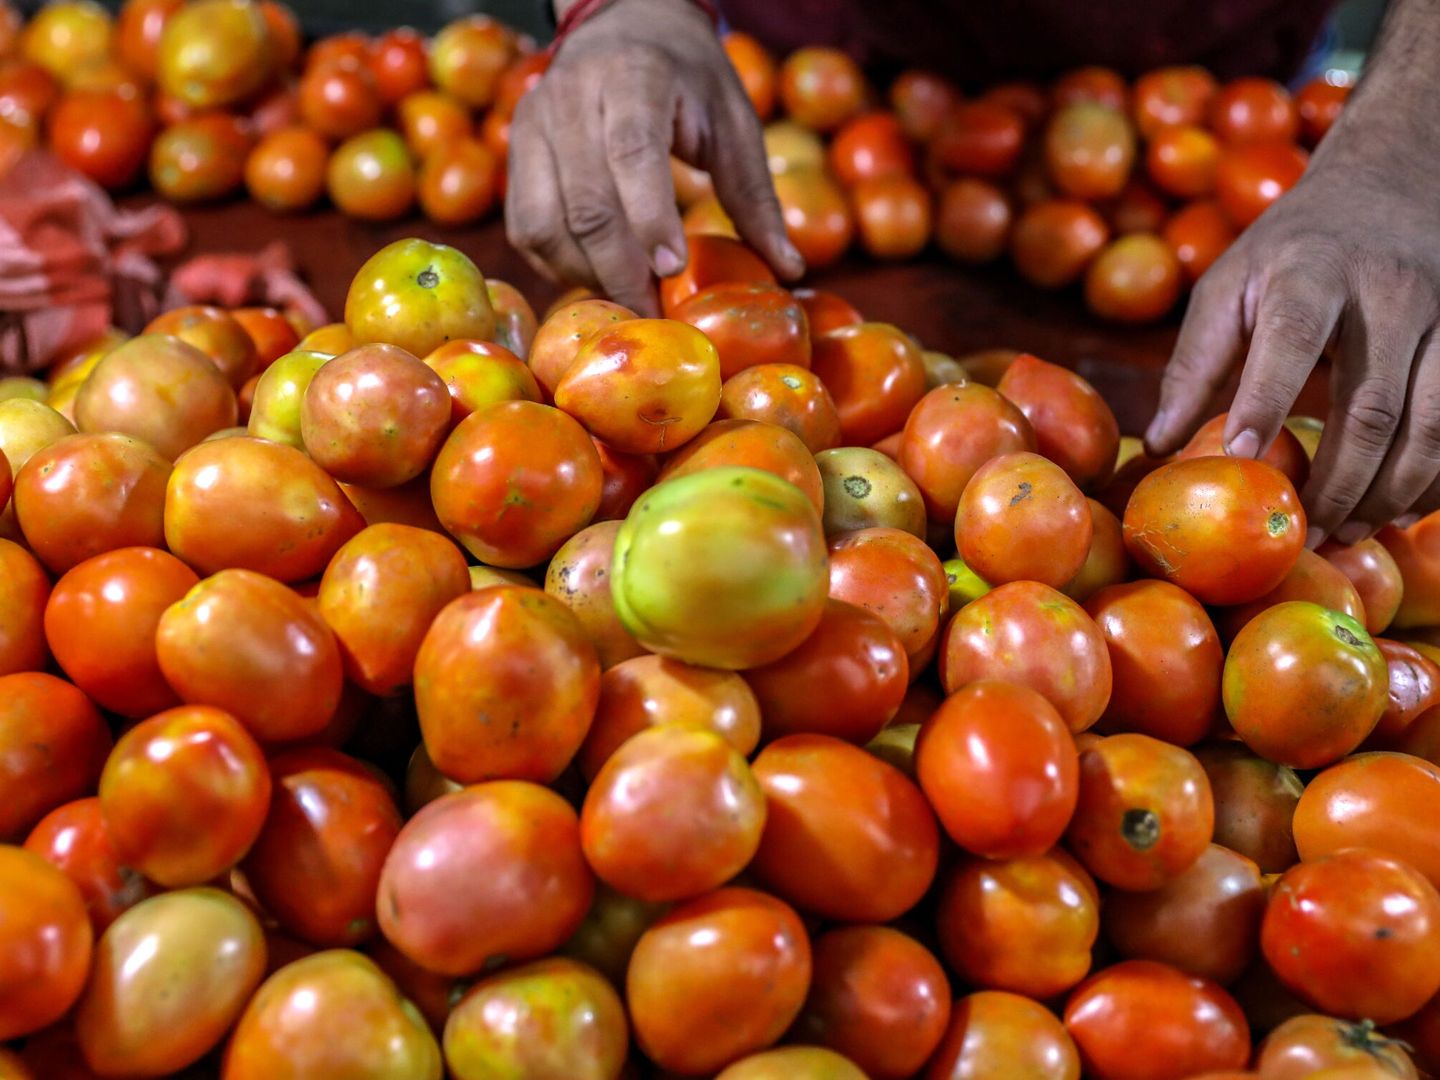 Una persona compra tomates en un mercado de verduras. (EFE/Divyakant Solanki)